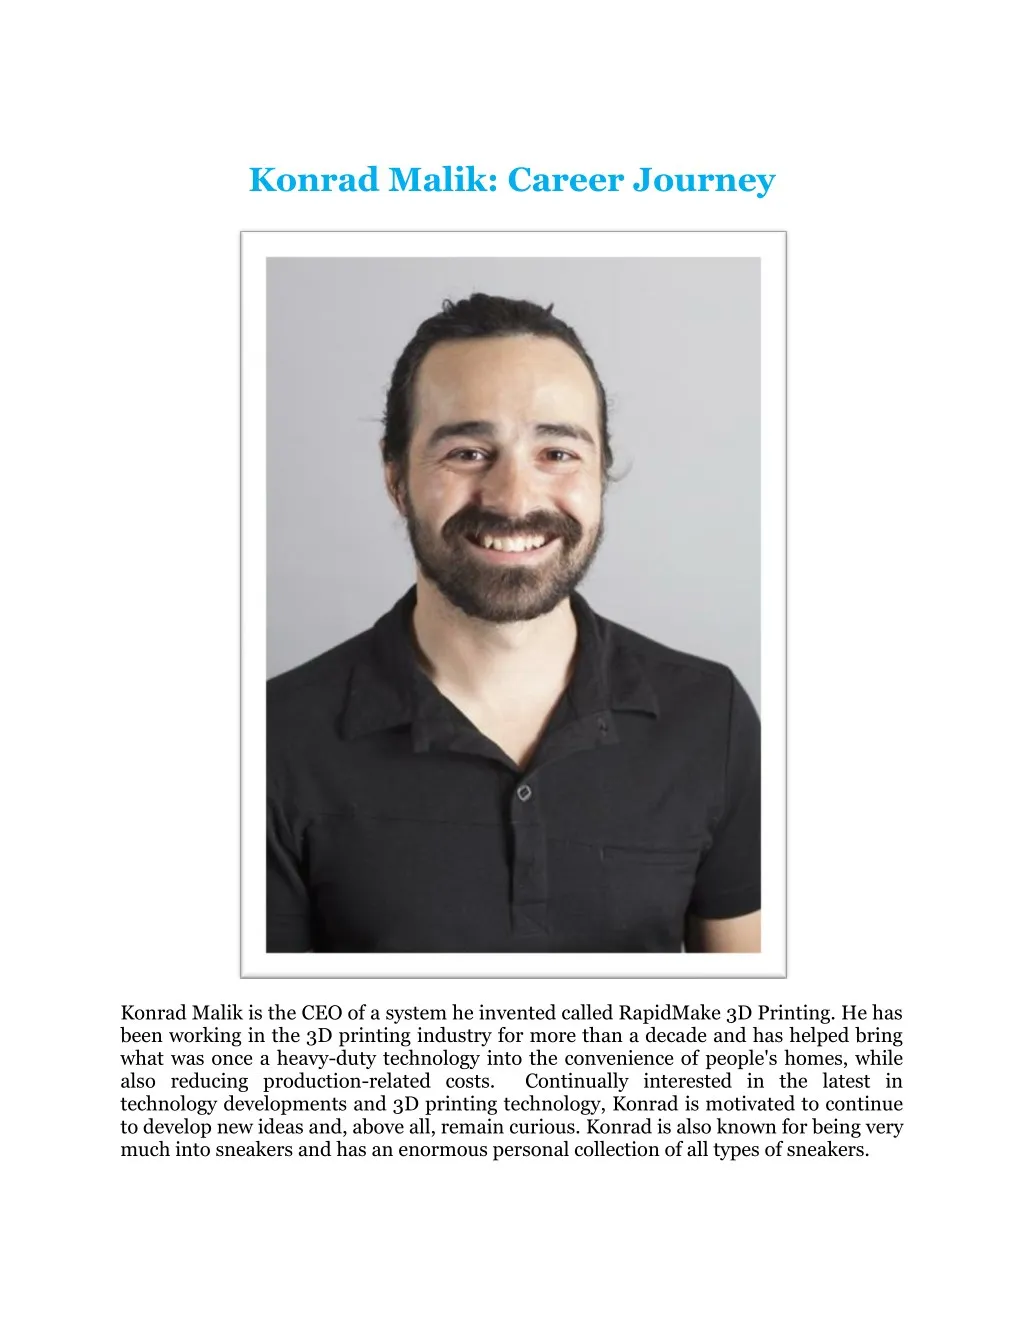 konrad malik career journey